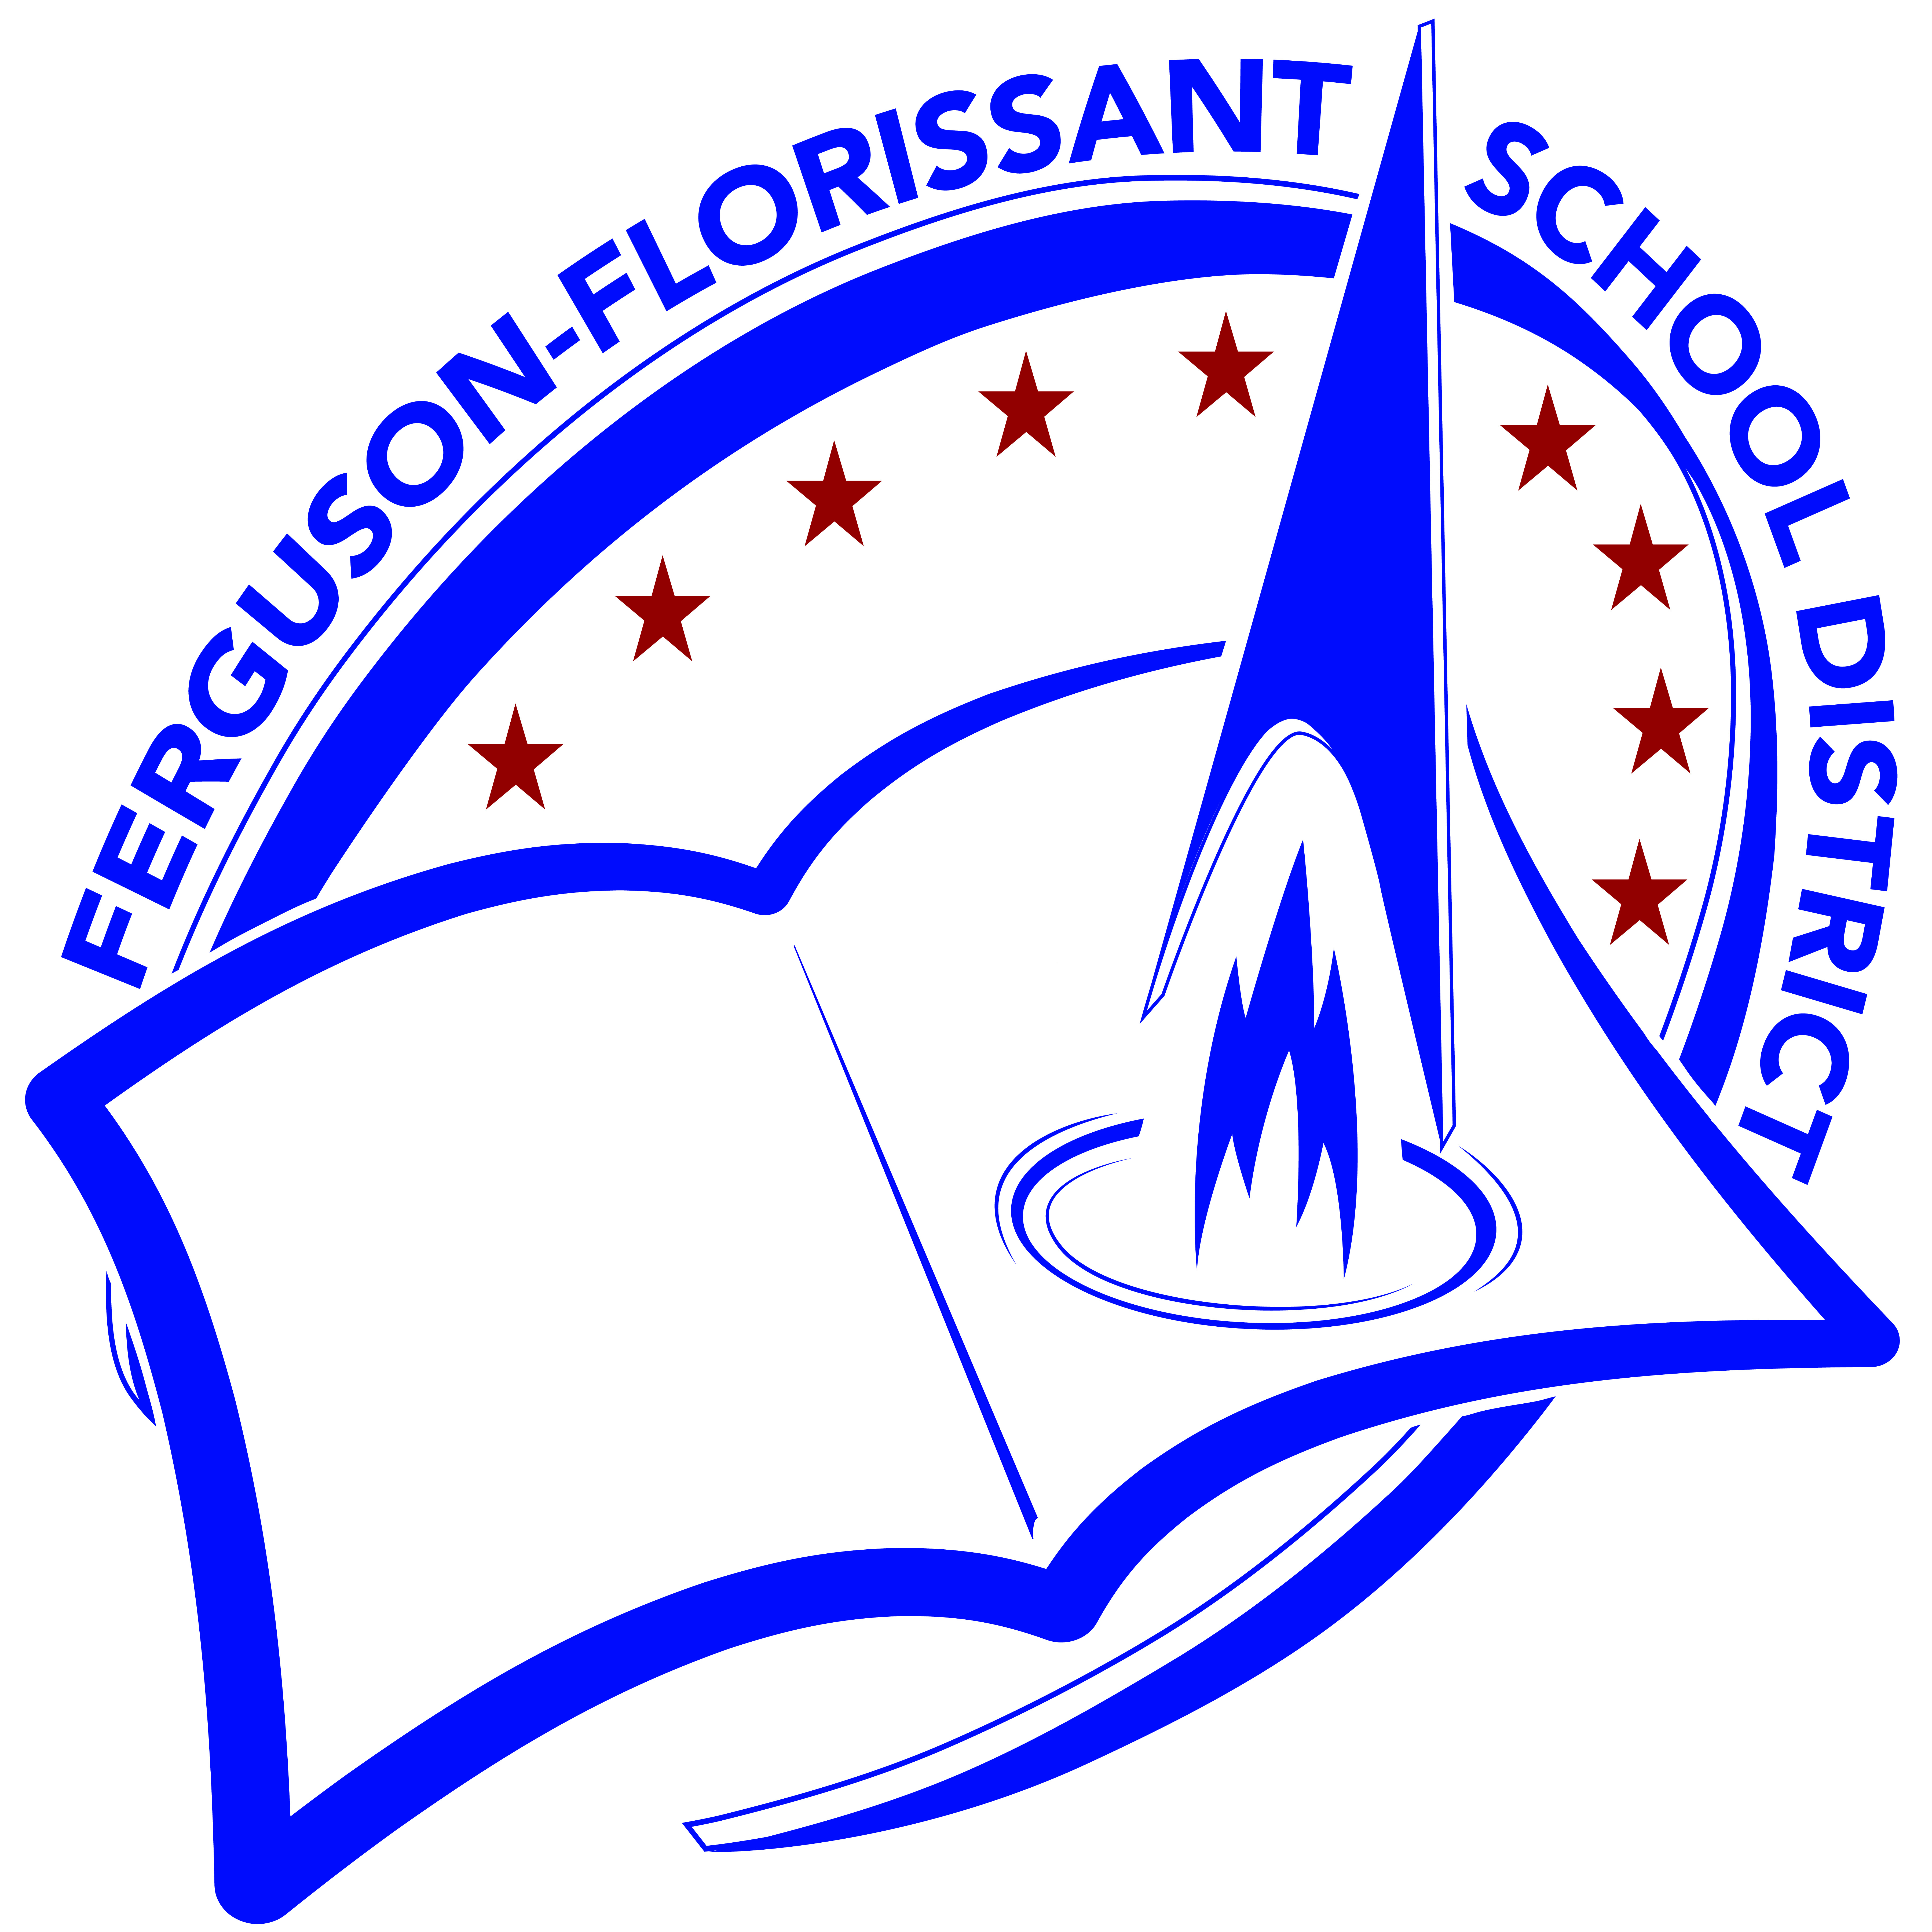 Ferguson-Florissant School District donors